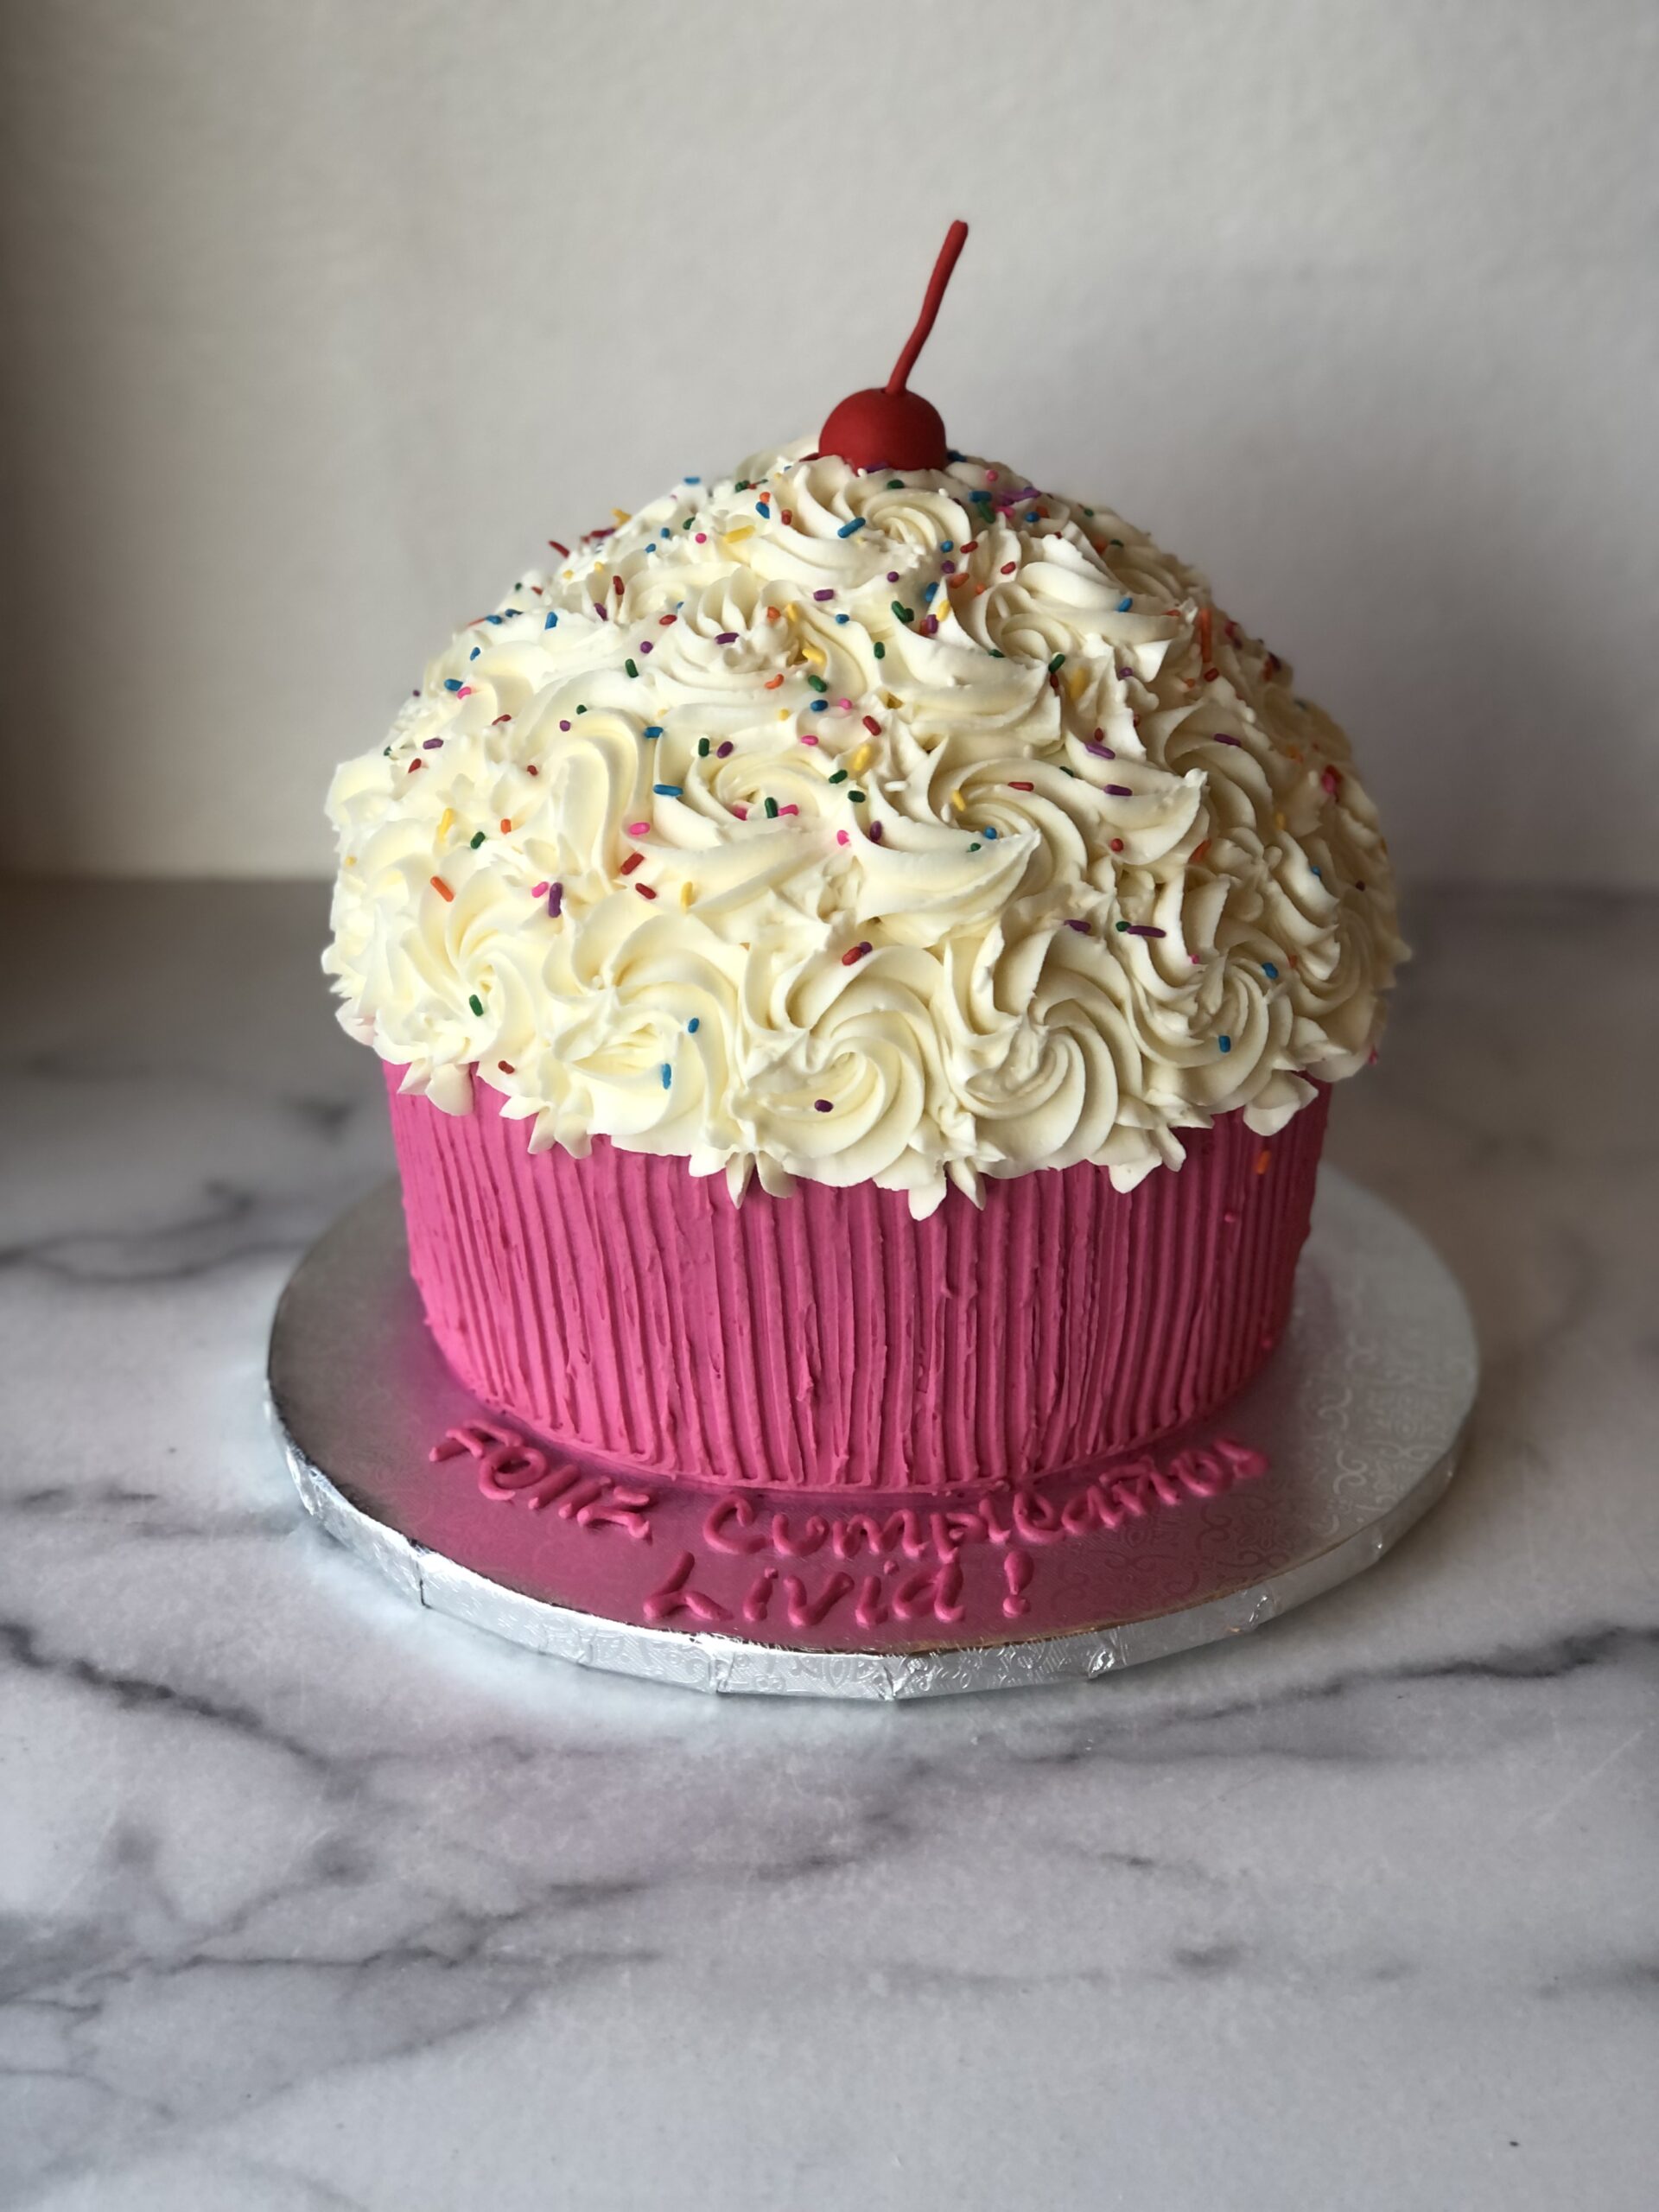 https://larkcakeshop.com/wp-content/uploads/2022/04/Cupcake-Cake-scaled.jpeg